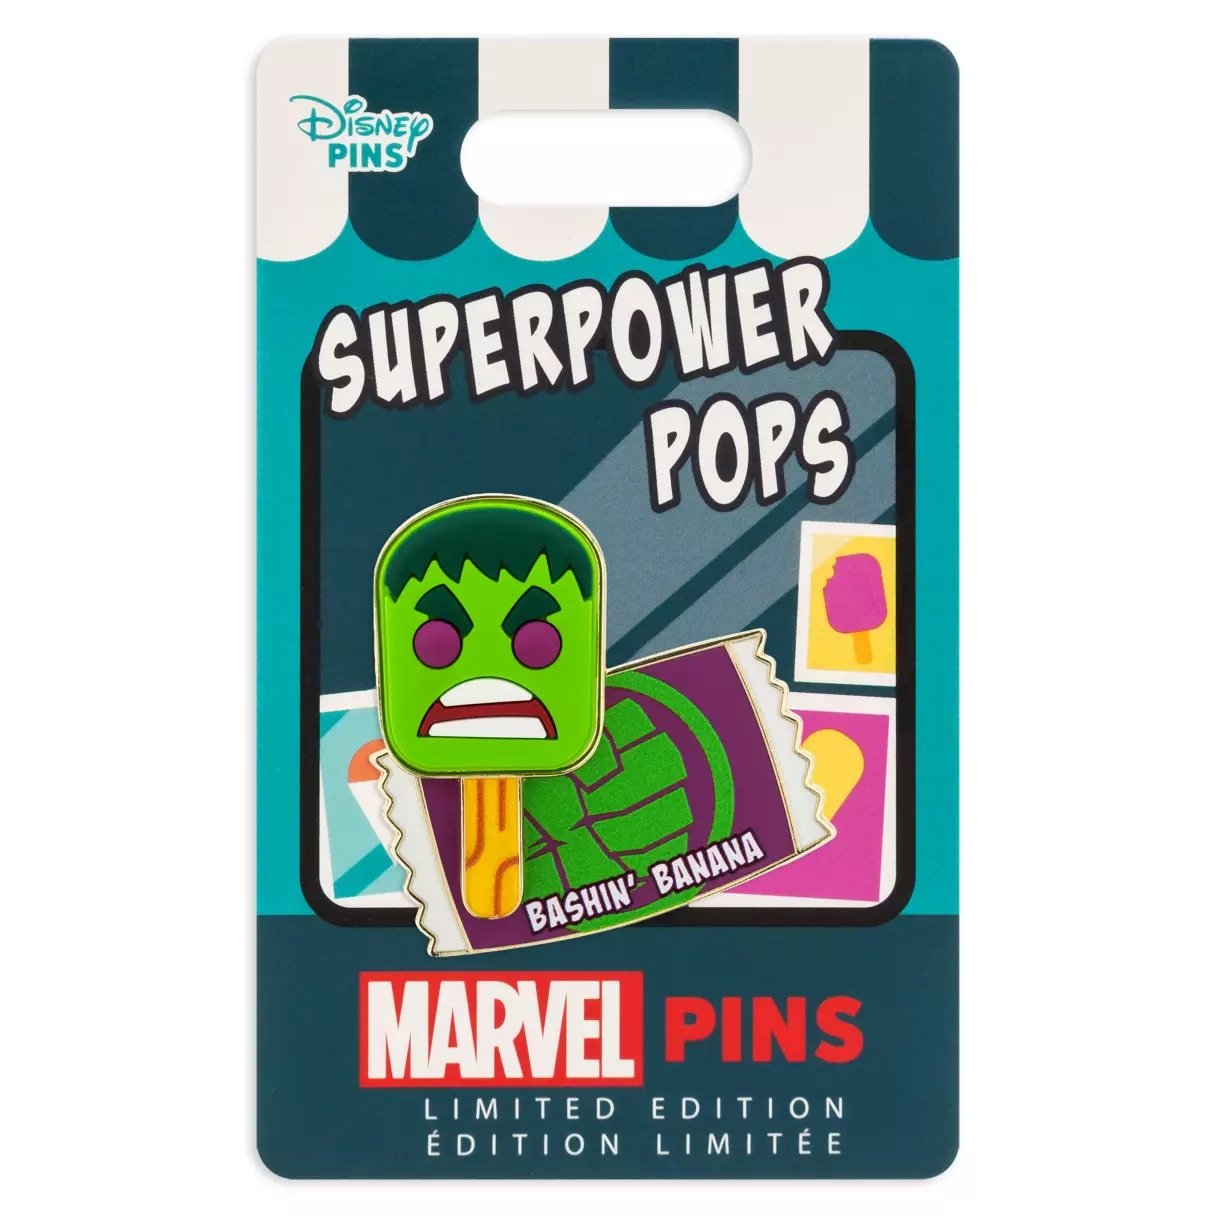 Hulk Bashin' Banana Superpower Pops Pin